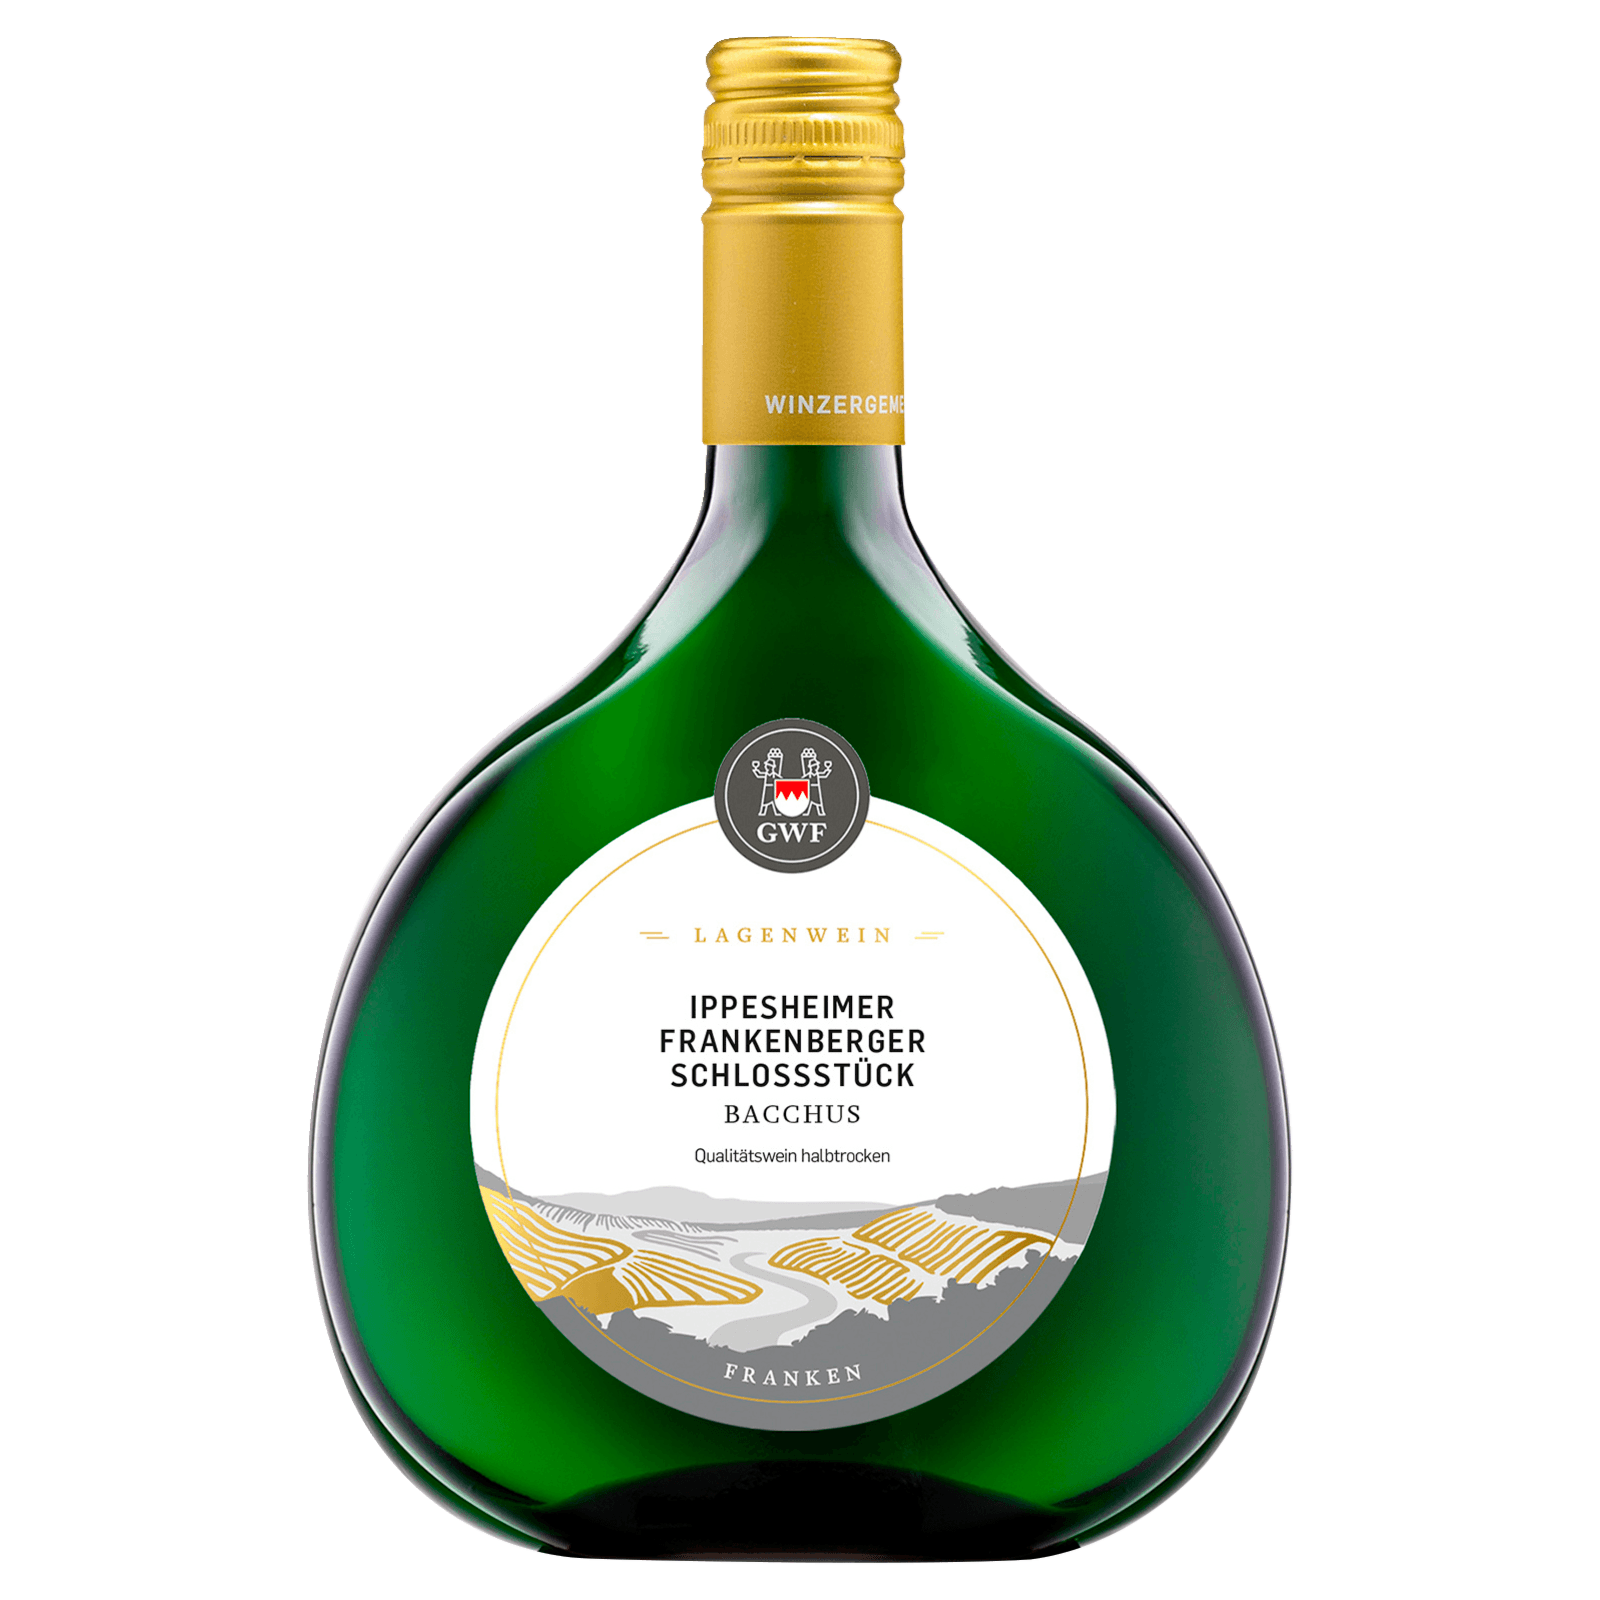 Schlossstück online Frankenberger Weißwein GWF QbA bestellen! Bacchus 0,75l halbtrocken bei REWE Ippesheimer